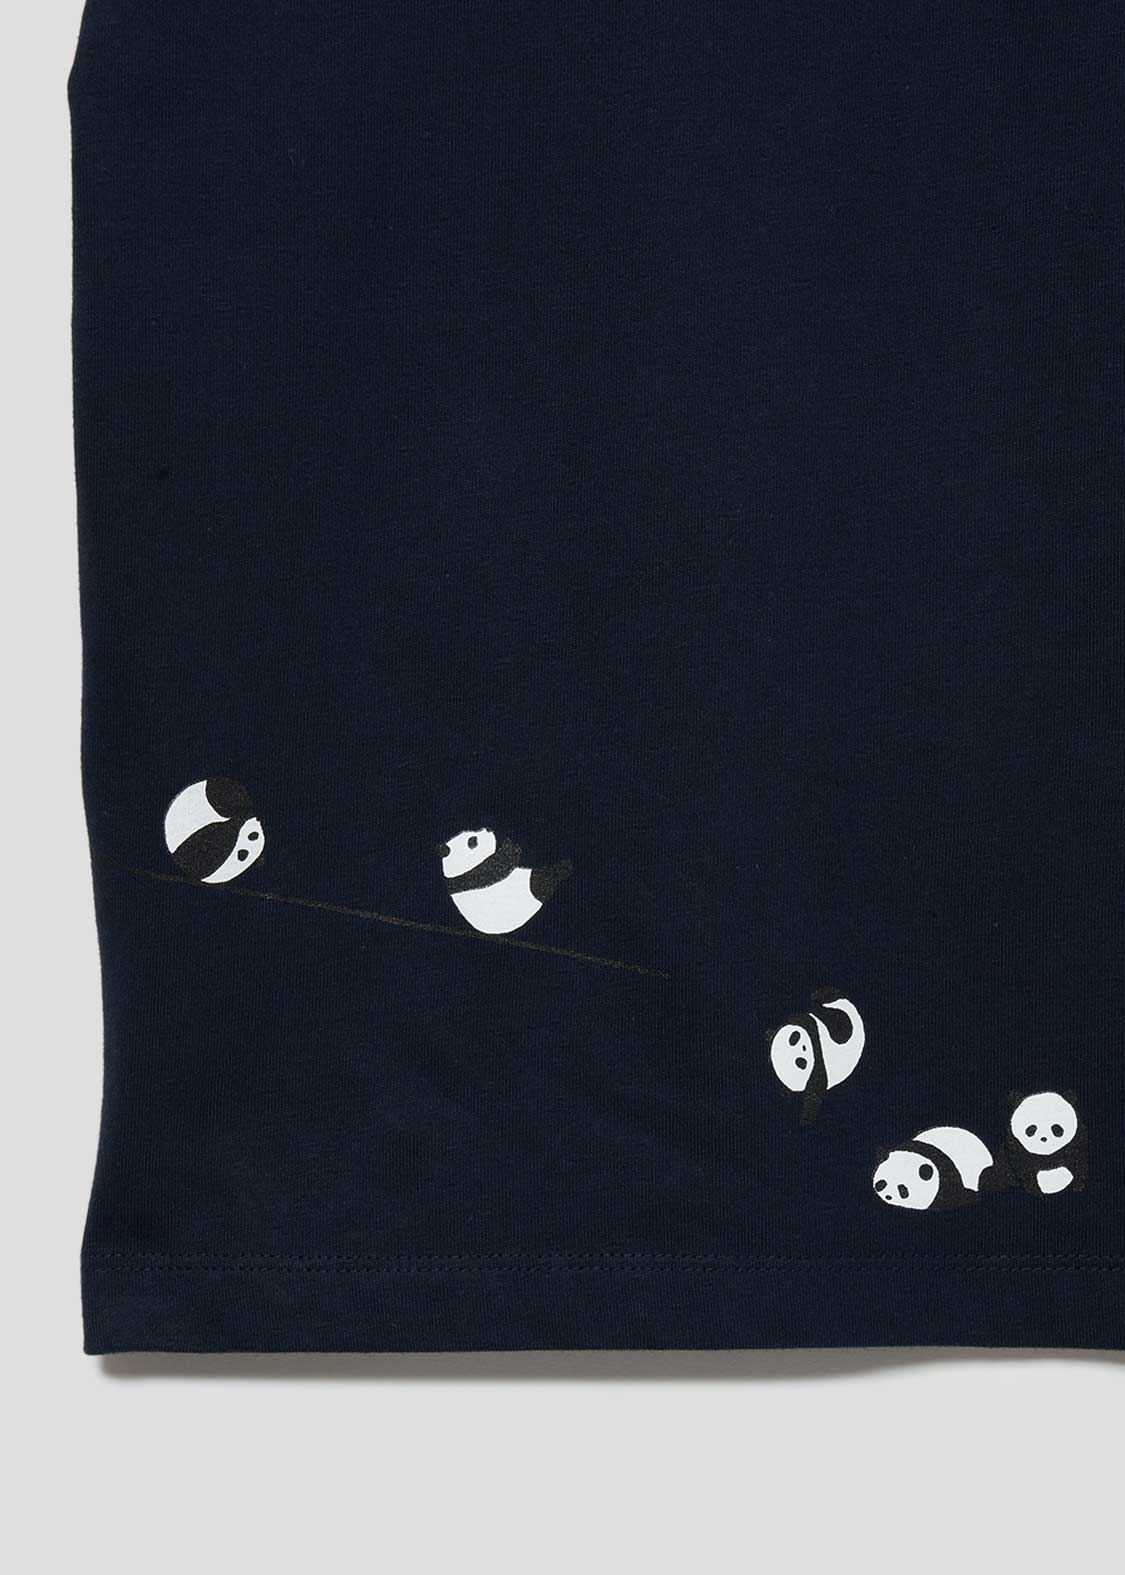 Rolling Pandas Logo Navy